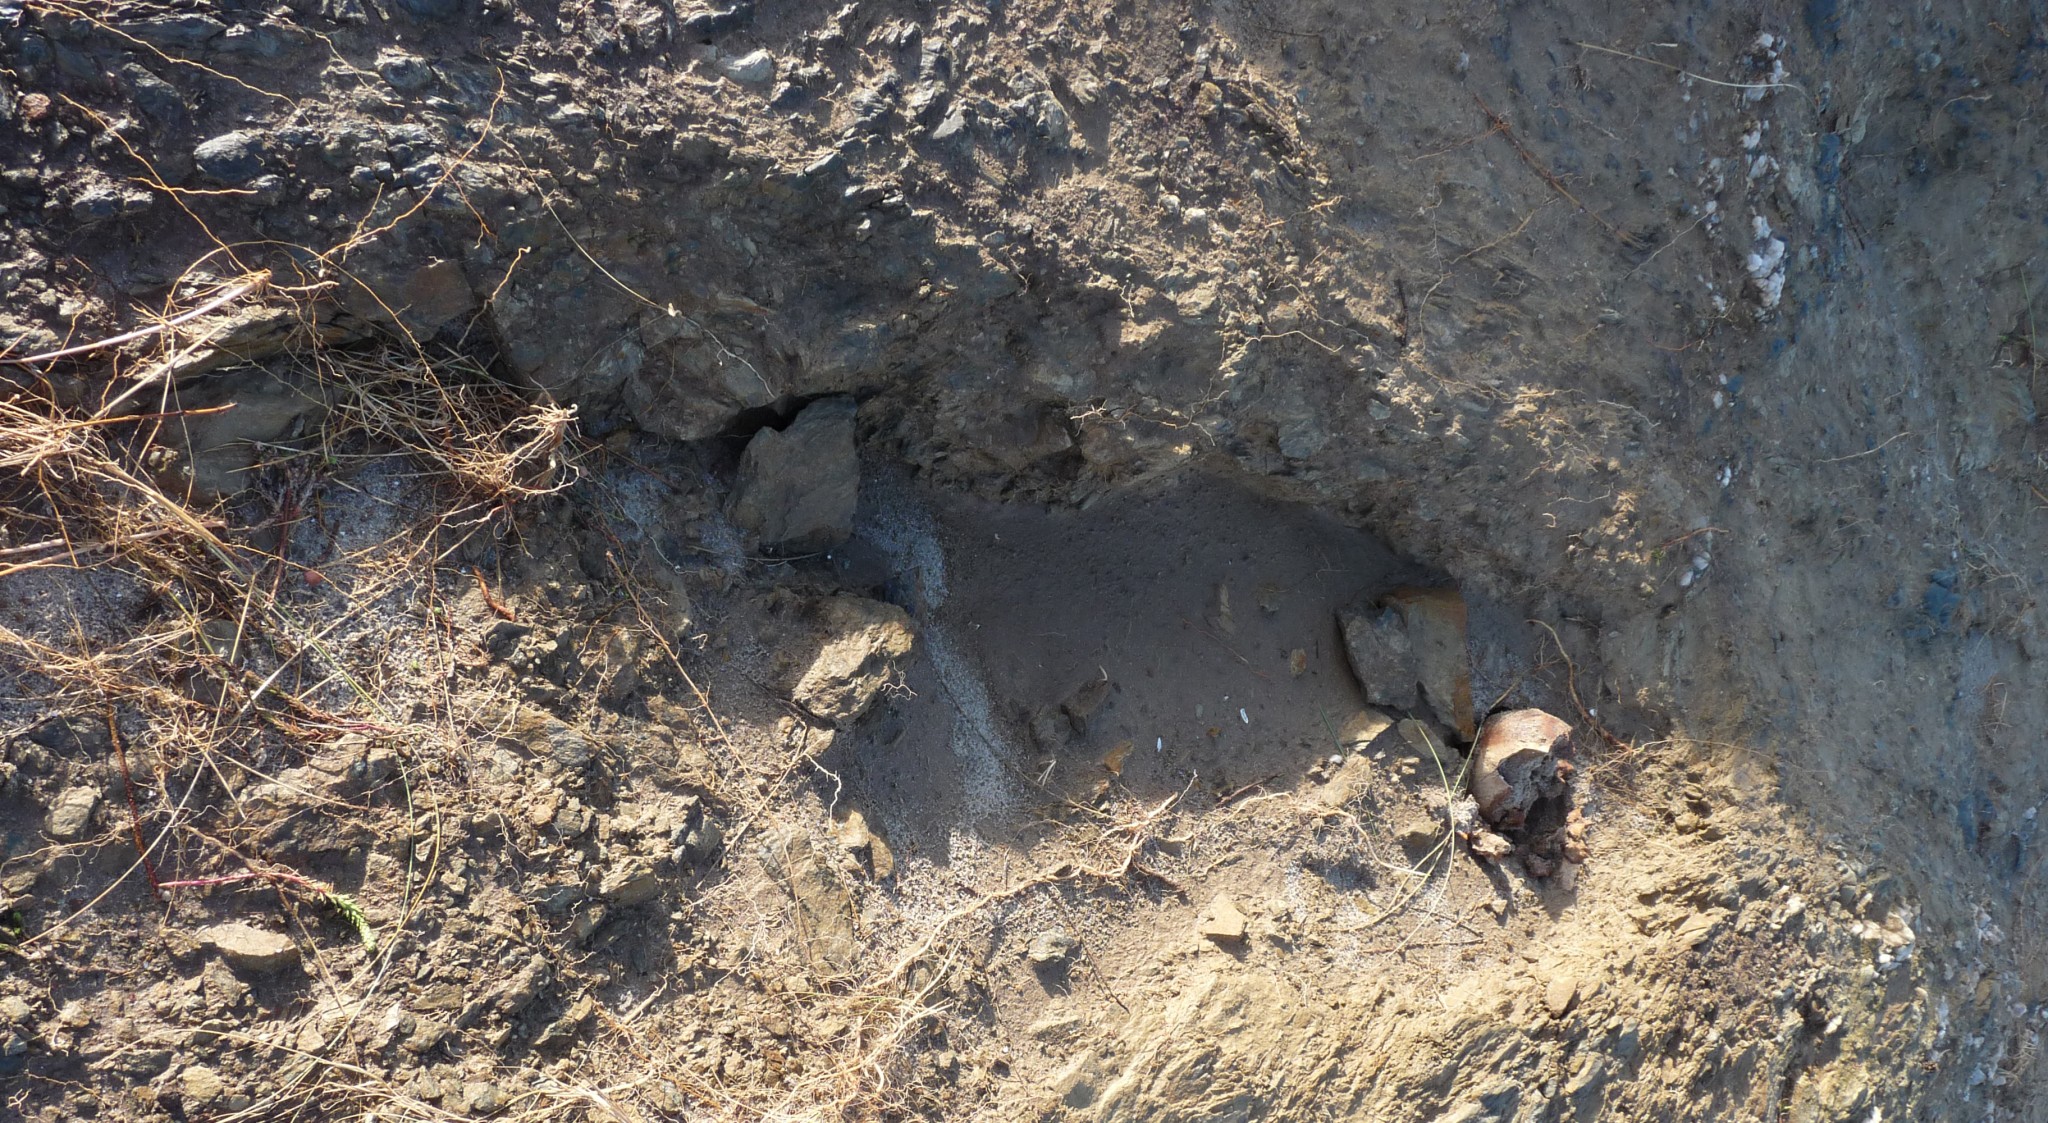 Foto 19: Fotos del lugar en el que apareció un enterramiento humano (Playa de Santa Comba)